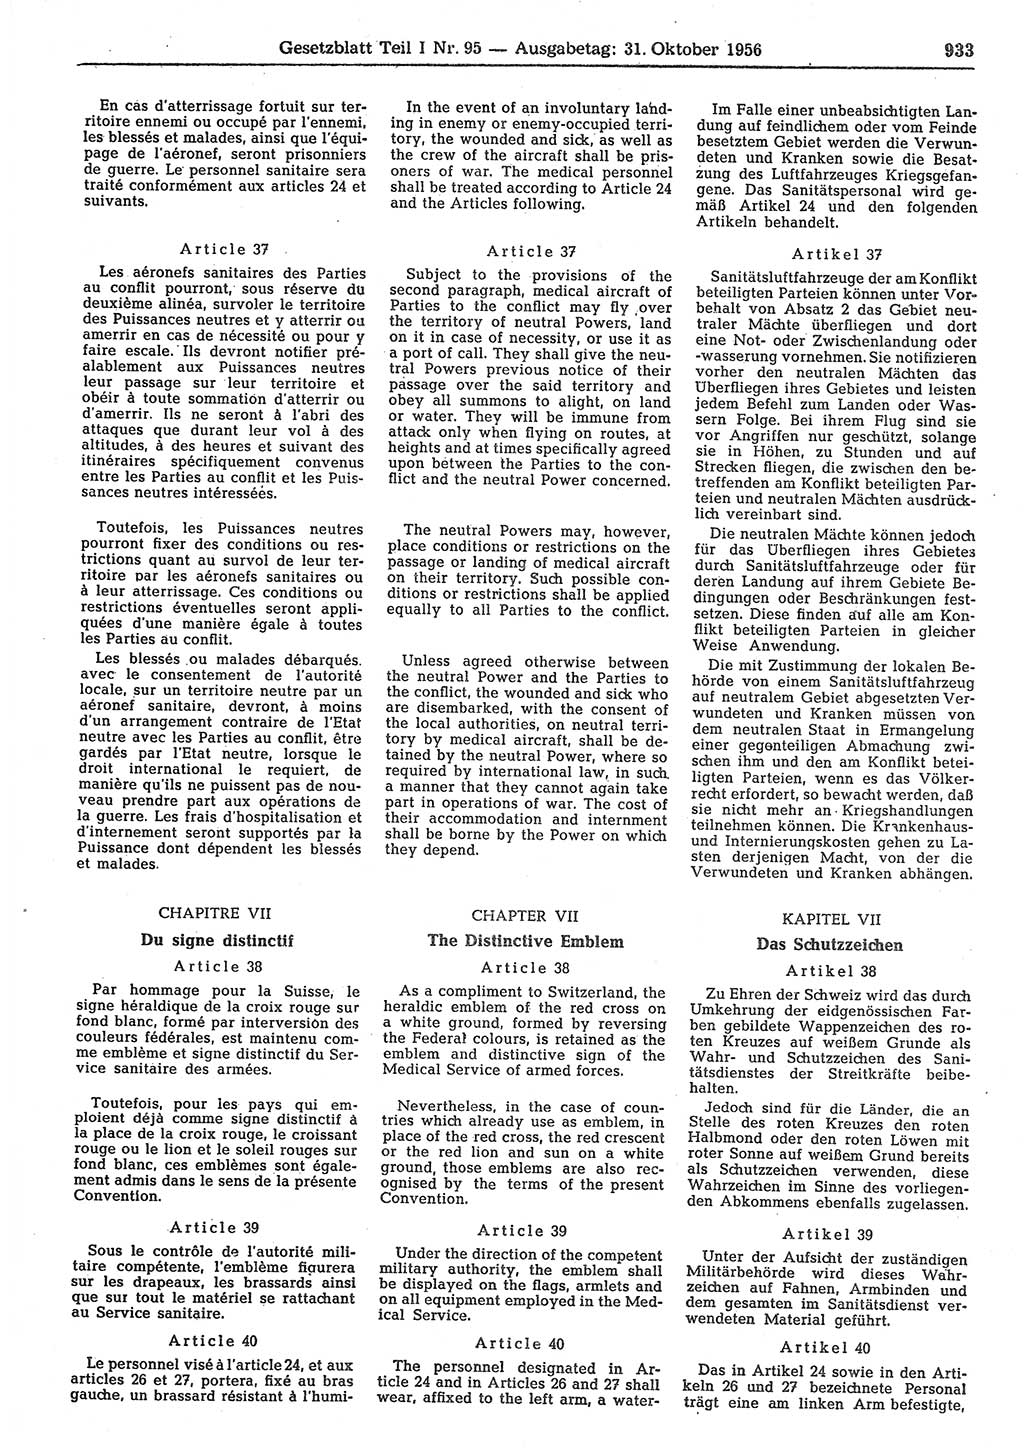 Gesetzblatt (GBl.) der Deutschen Demokratischen Republik (DDR) Teil Ⅰ 1956, Seite 933 (GBl. DDR Ⅰ 1956, S. 933)